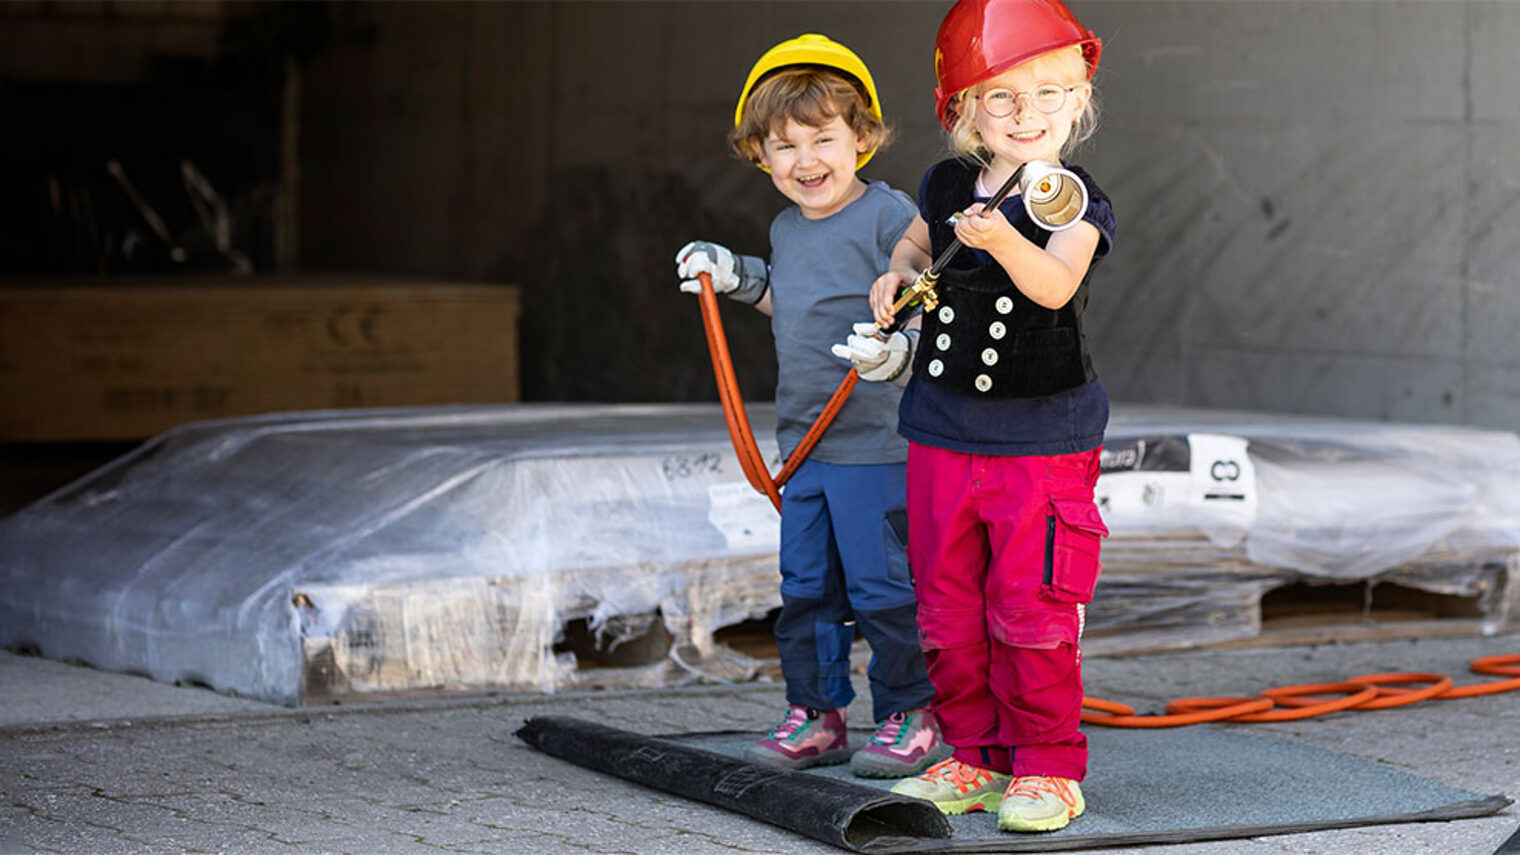 Titelbild des Kita-Wettbewerbs des Handwerks "Kleine Hände, große Zukunft" mit zwei Kindern bei einem Betriebsbesuch. Der Kita-Wettbewerb bringt Kinder und Handwerksbetriebe zusammen.